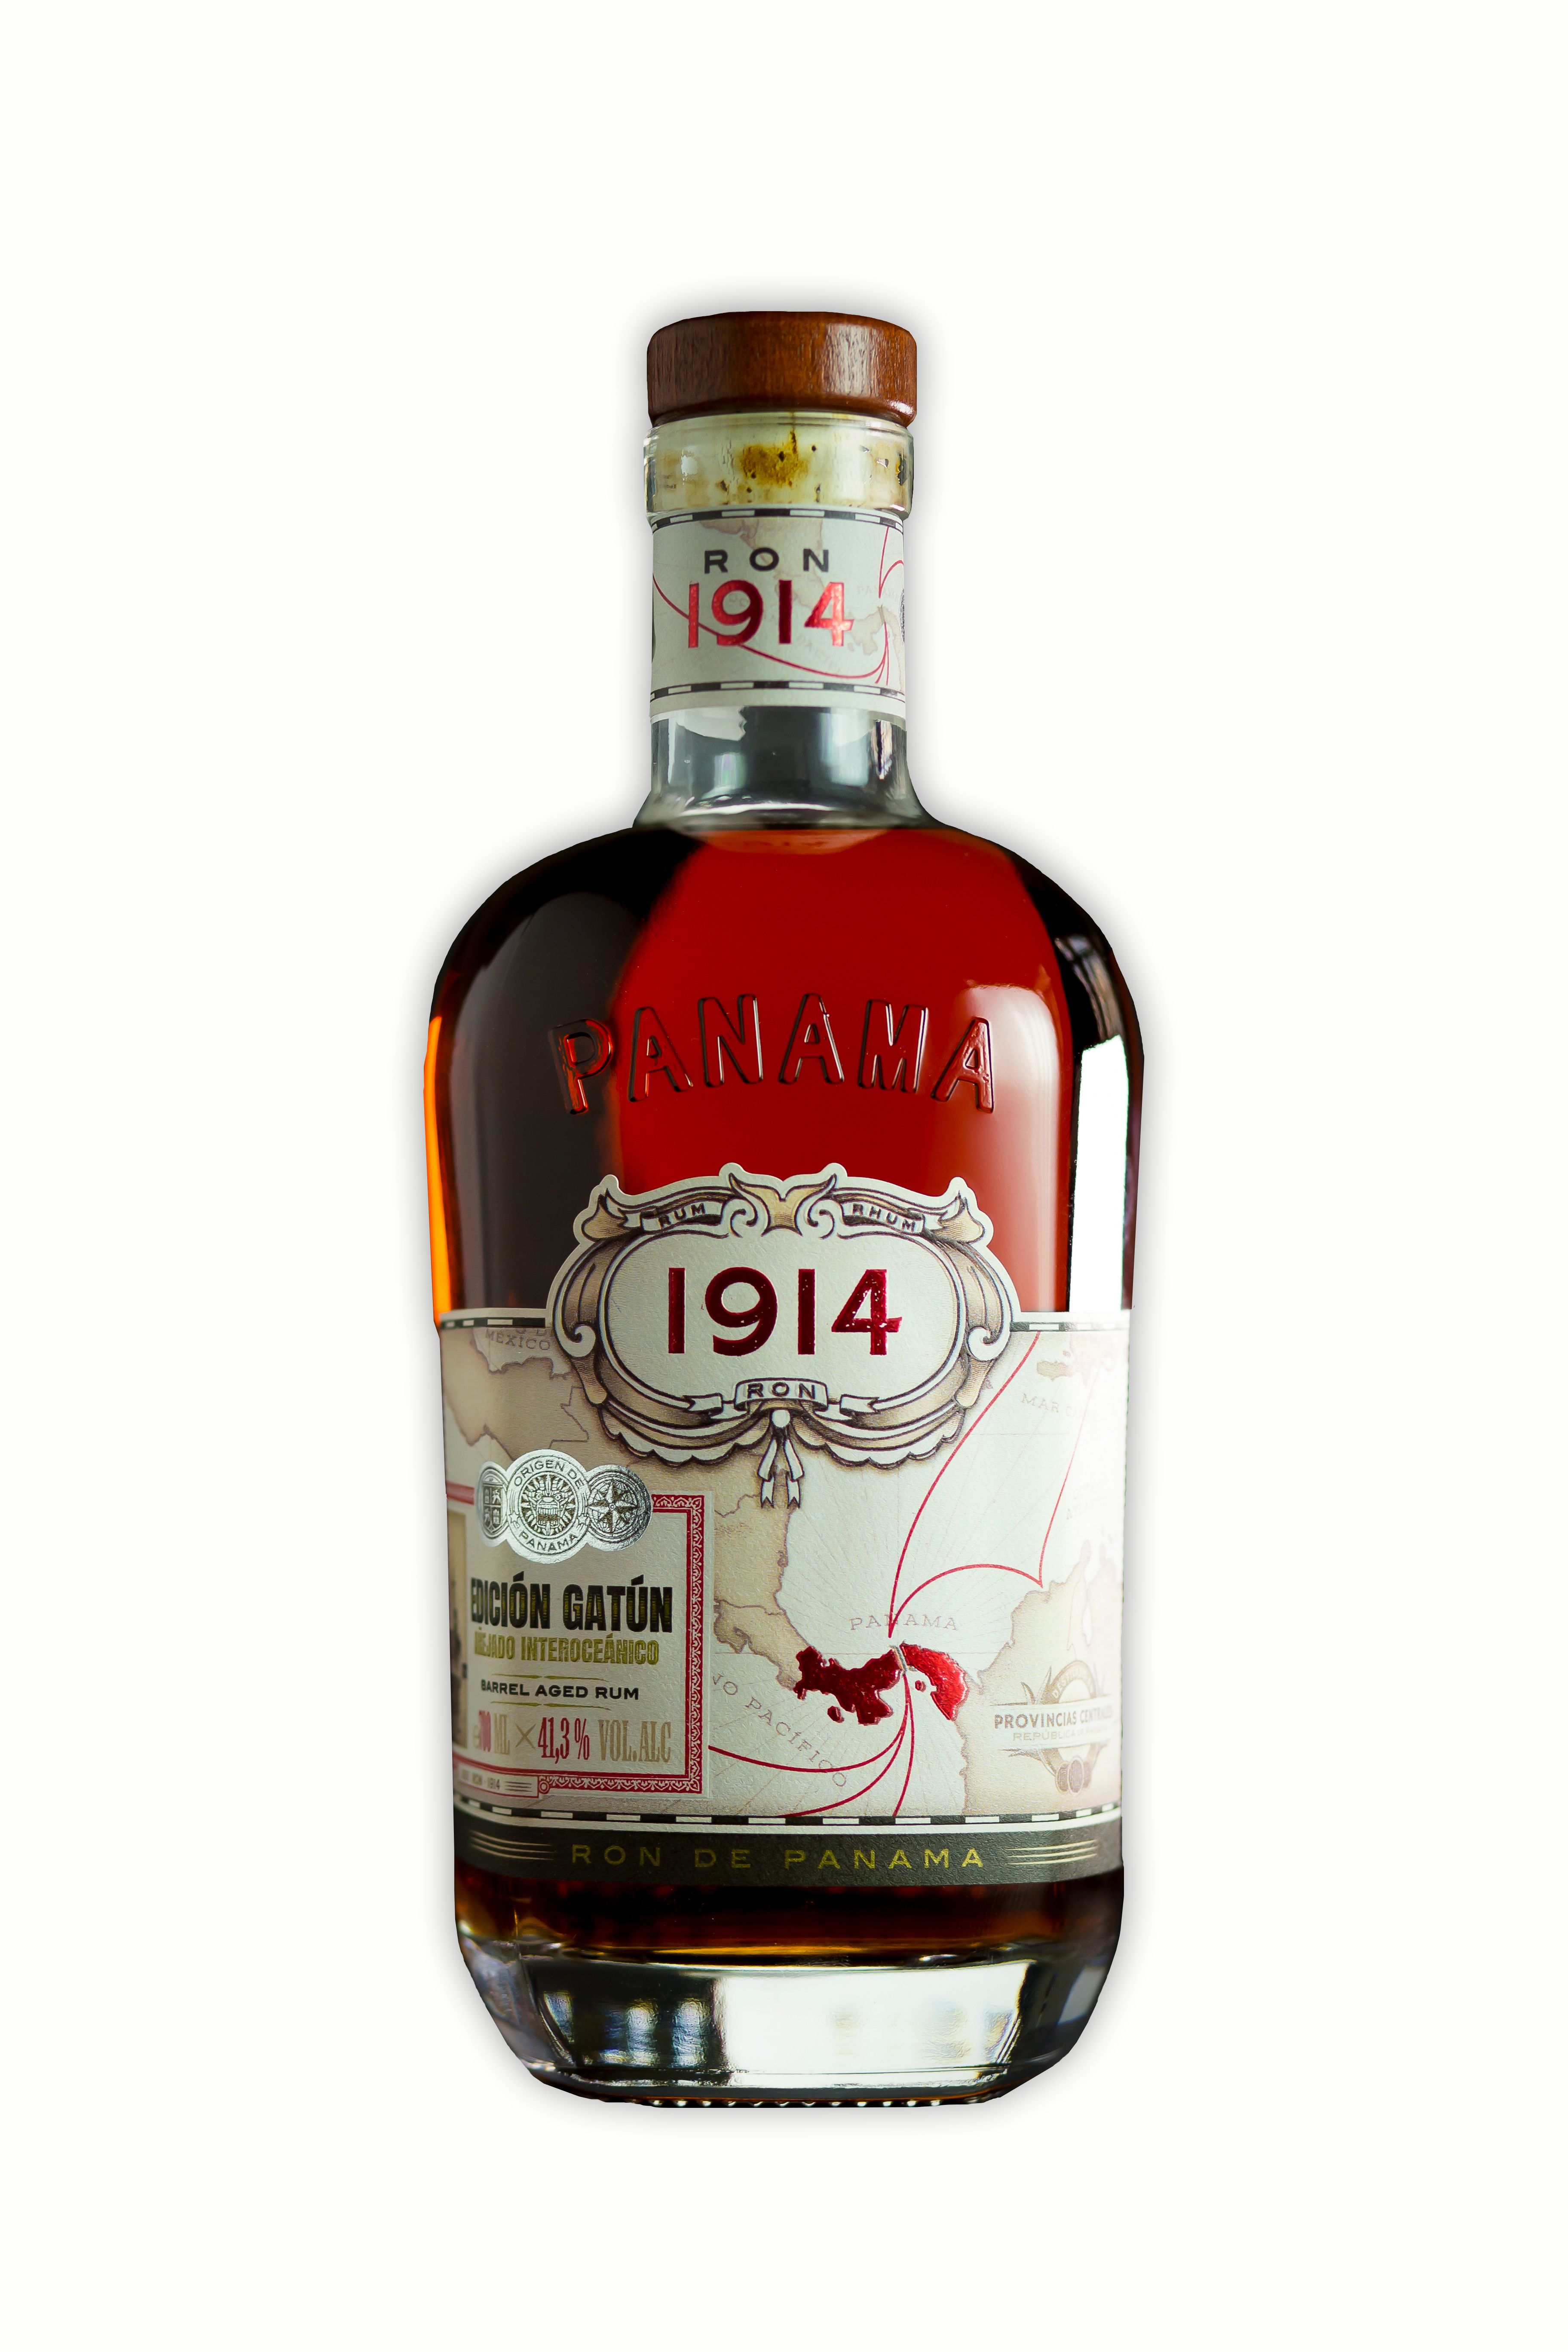 Ron 1914 Panama Rum